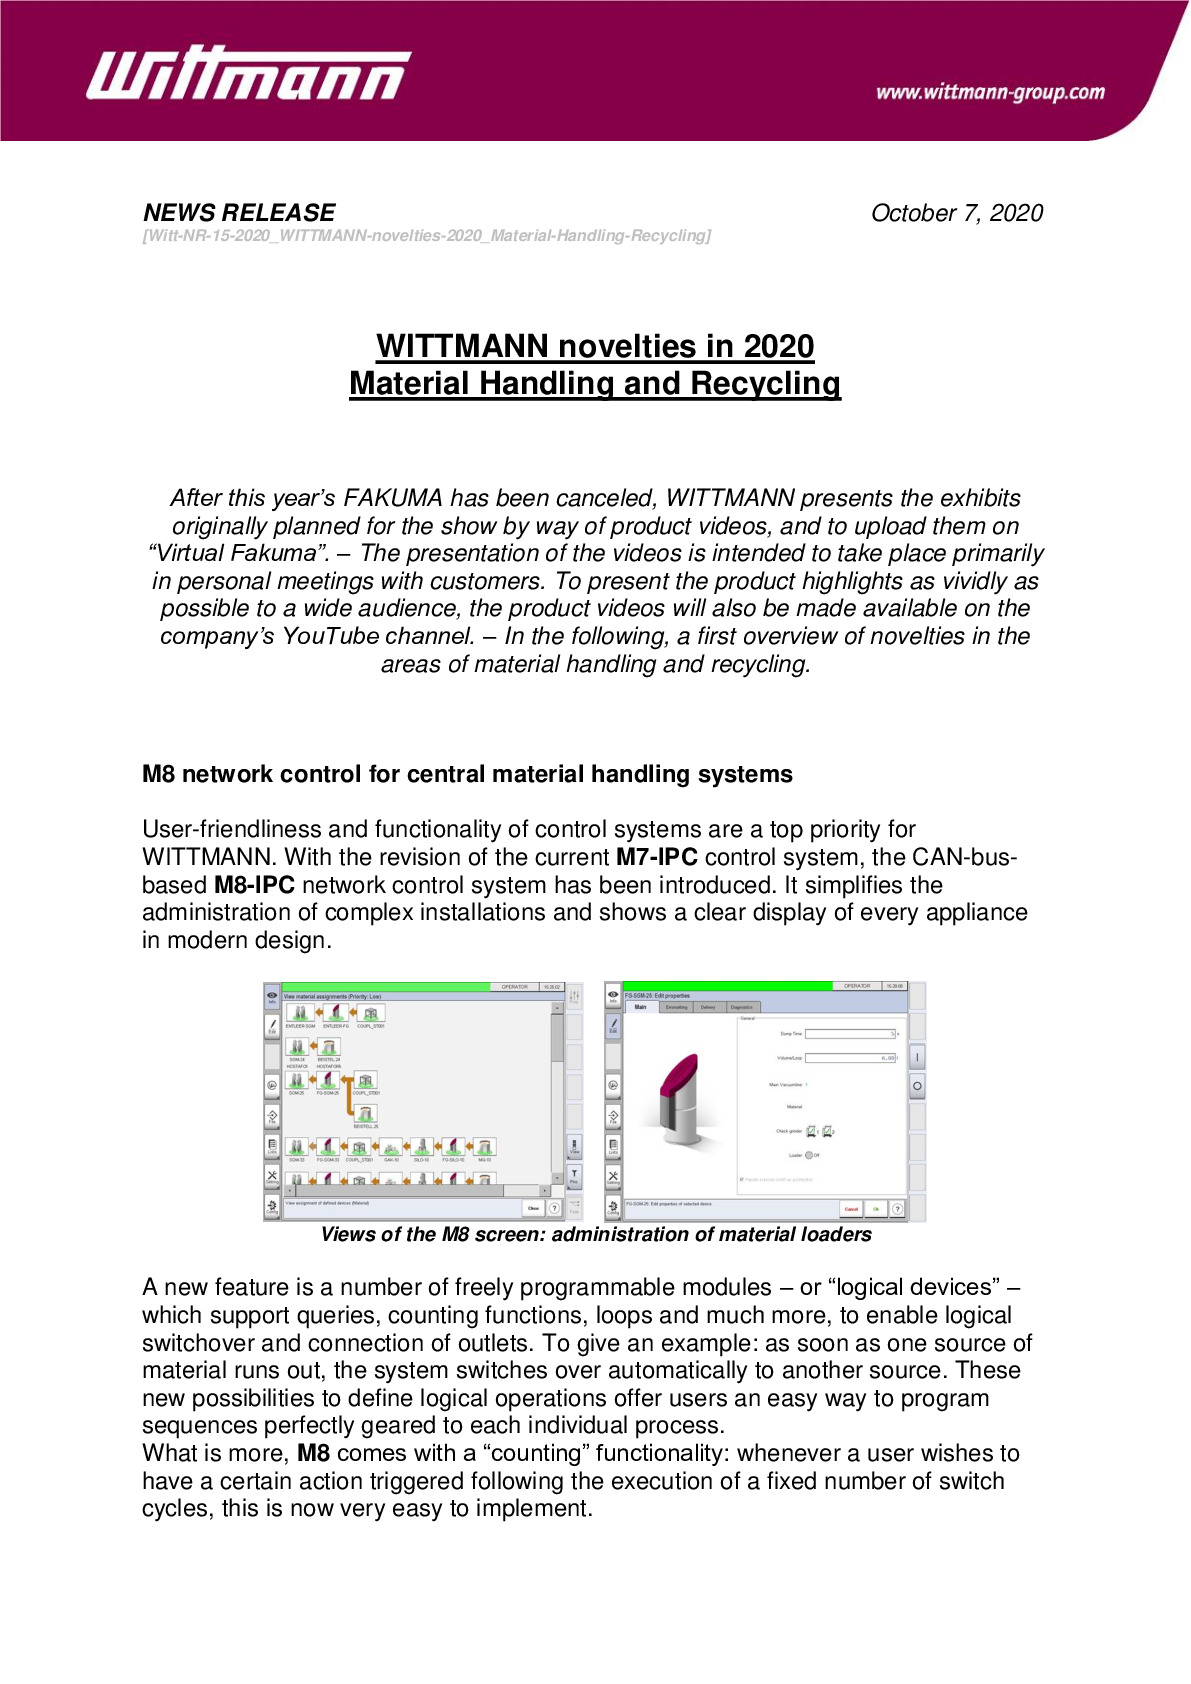 witt-nr-15-2020_wittmann-novelties-2020_material-handling-recycling_03